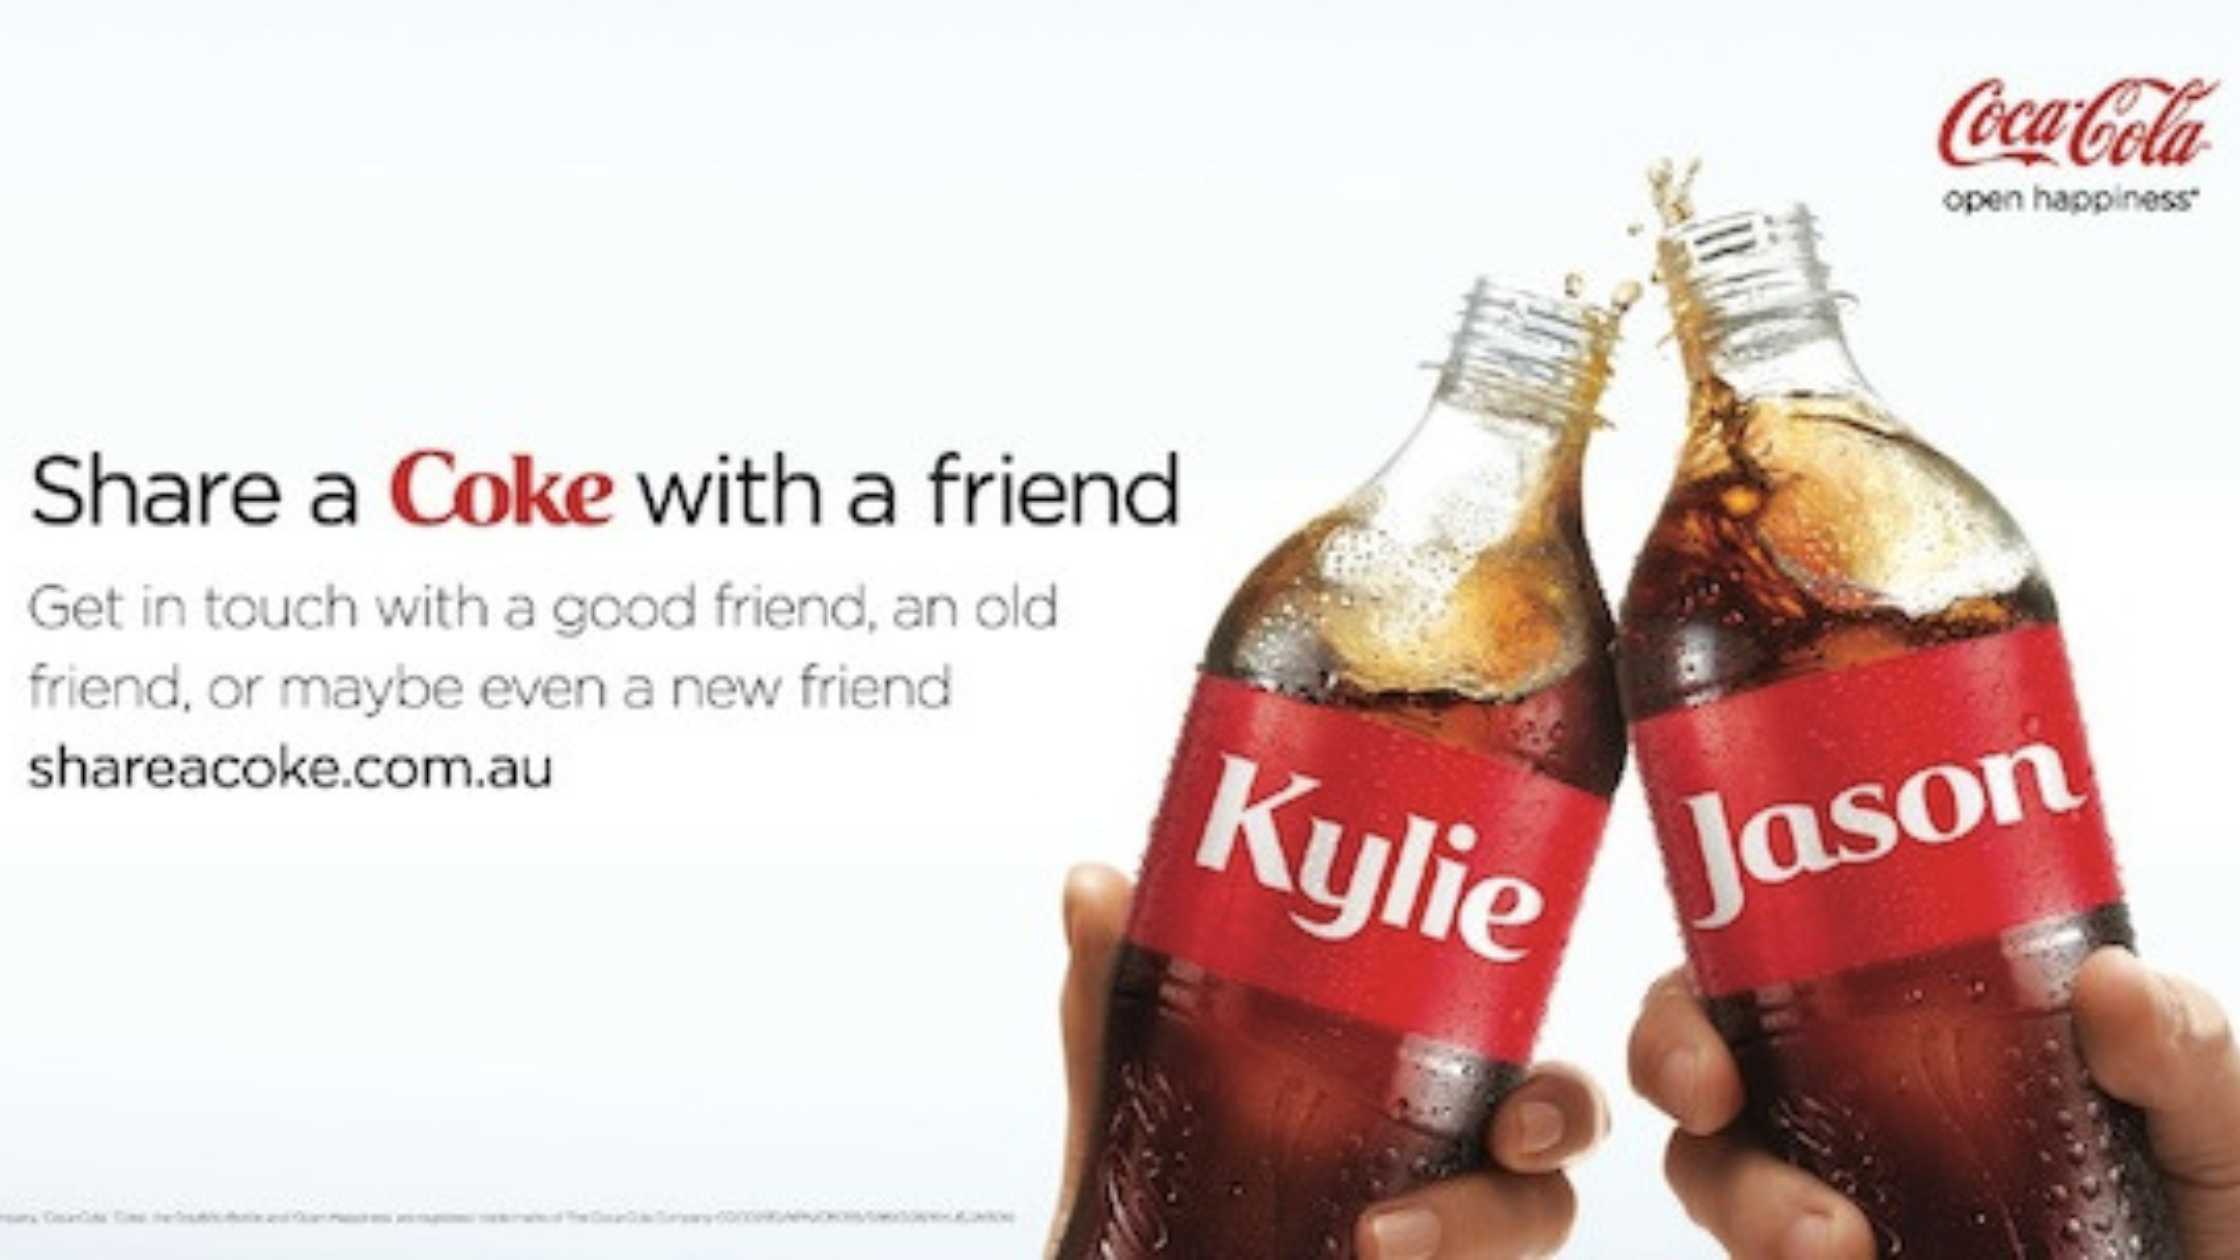 Coca-Cola introduced the "Share a Coke" campaign